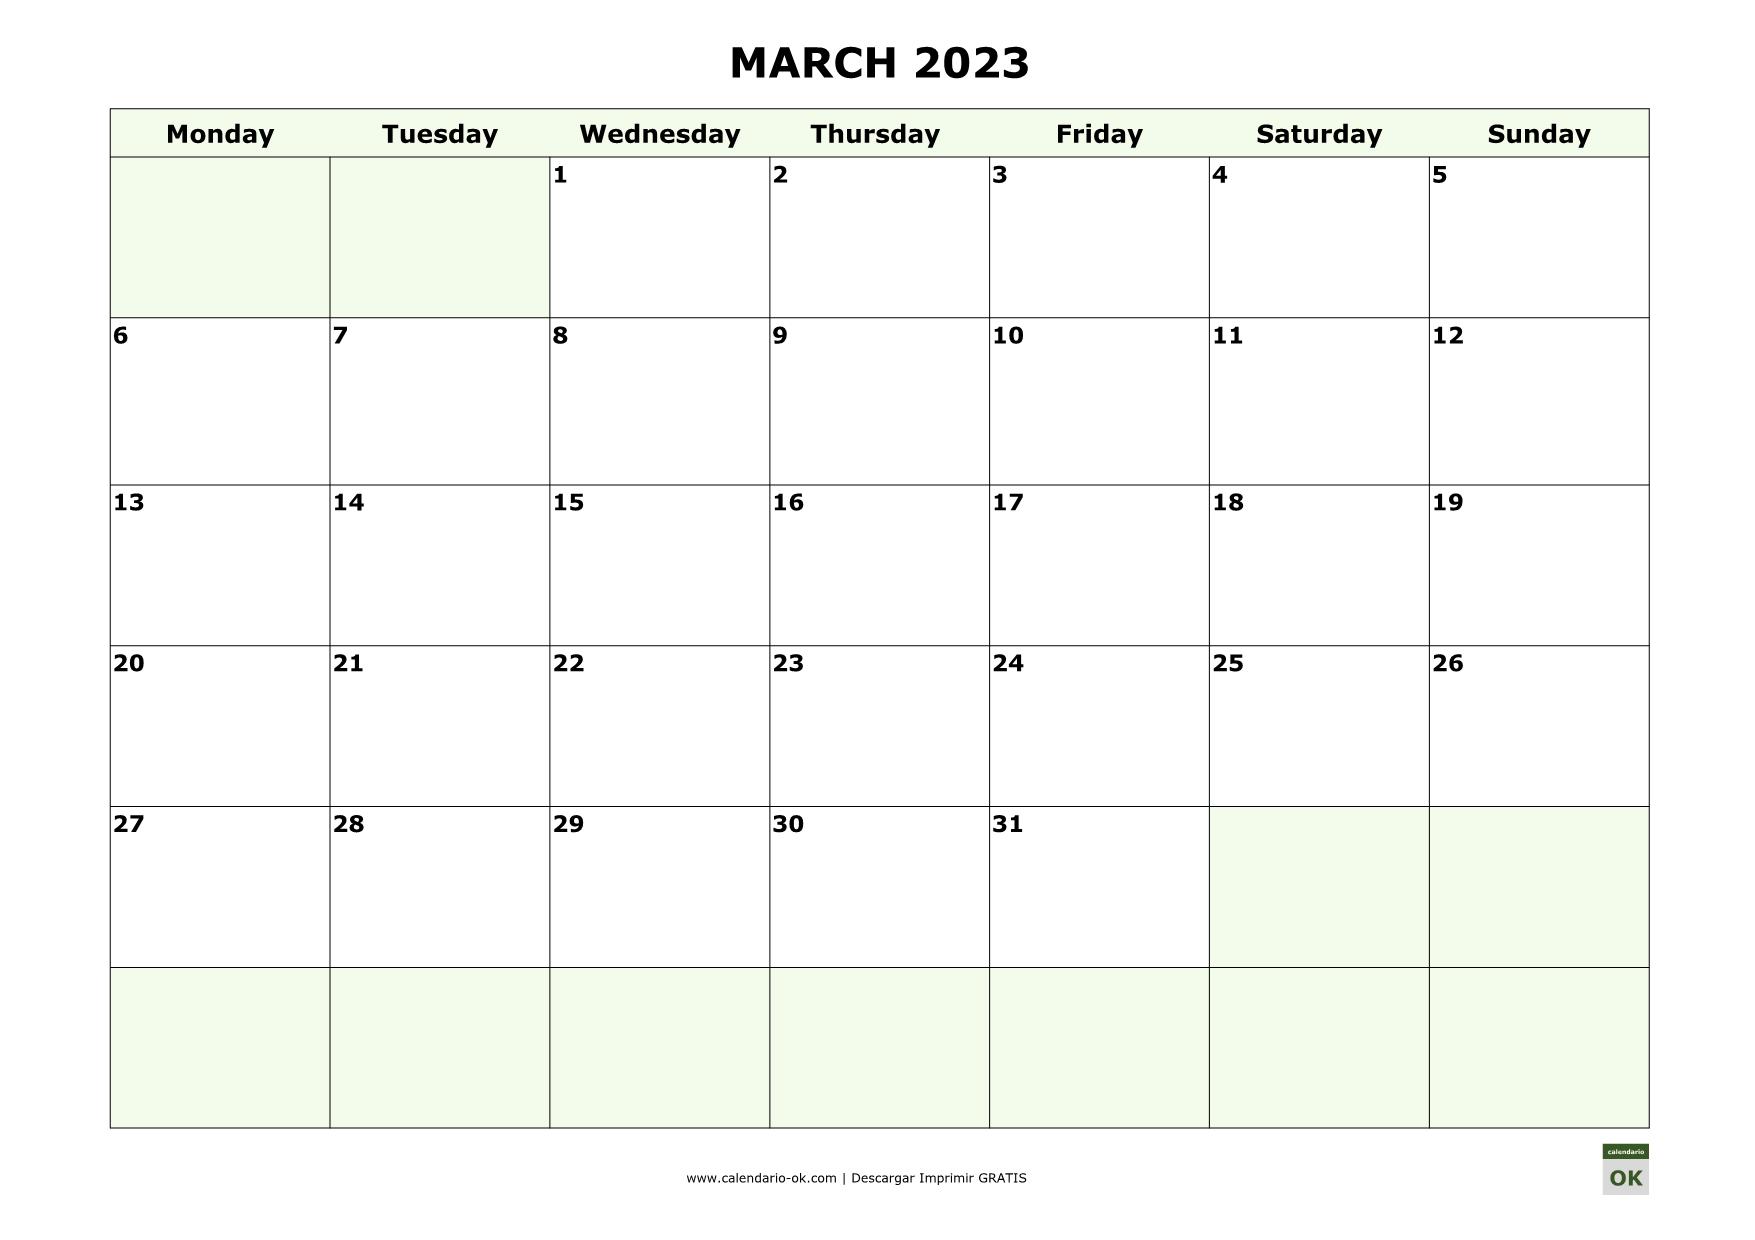 MARZO 2023 calendario en INGLES